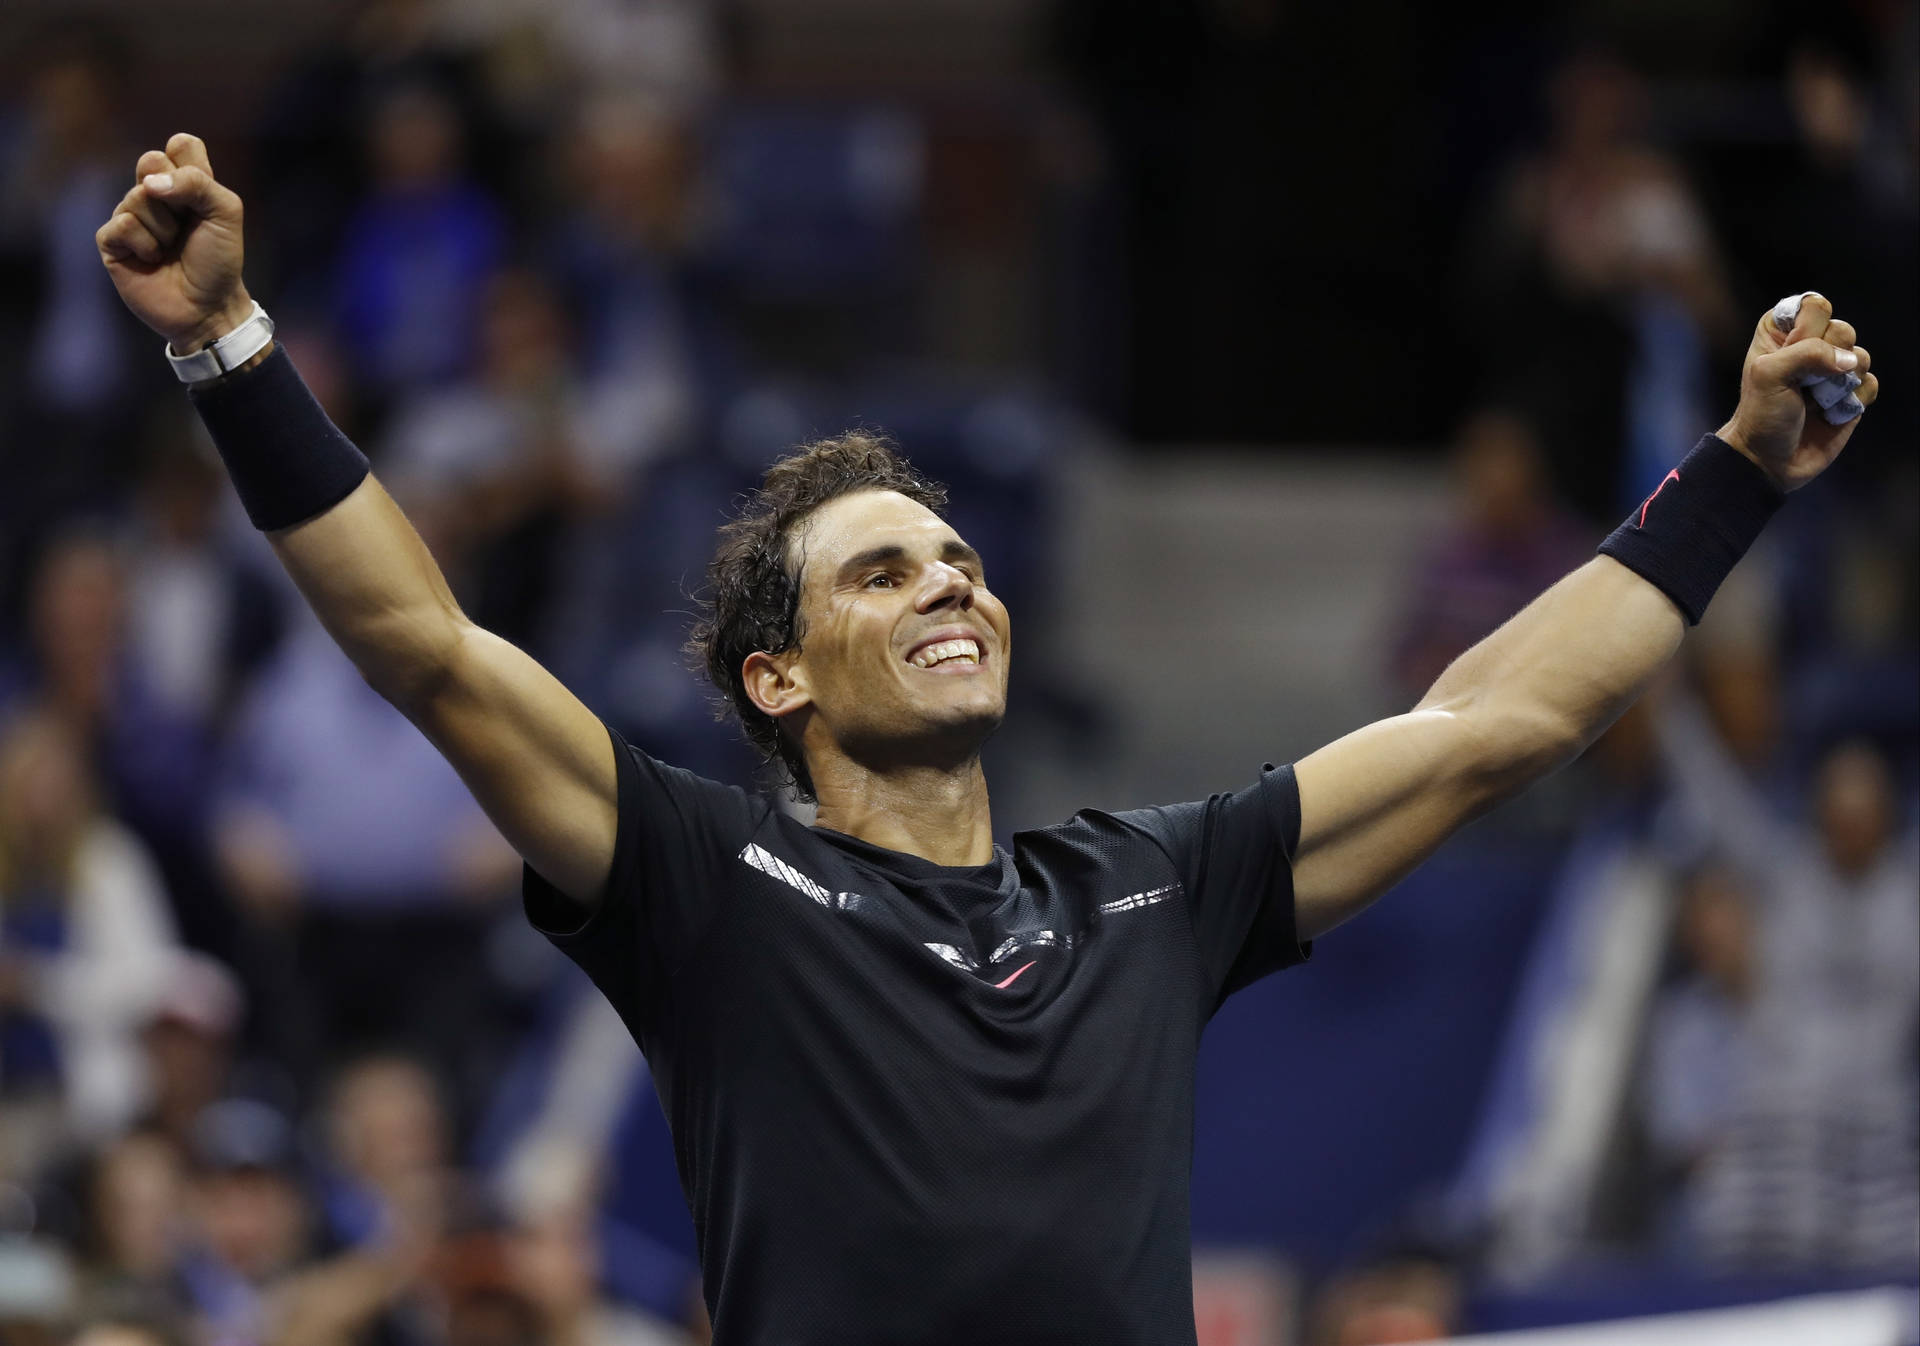 Rafael Nadal Tennis Champion Pose Background